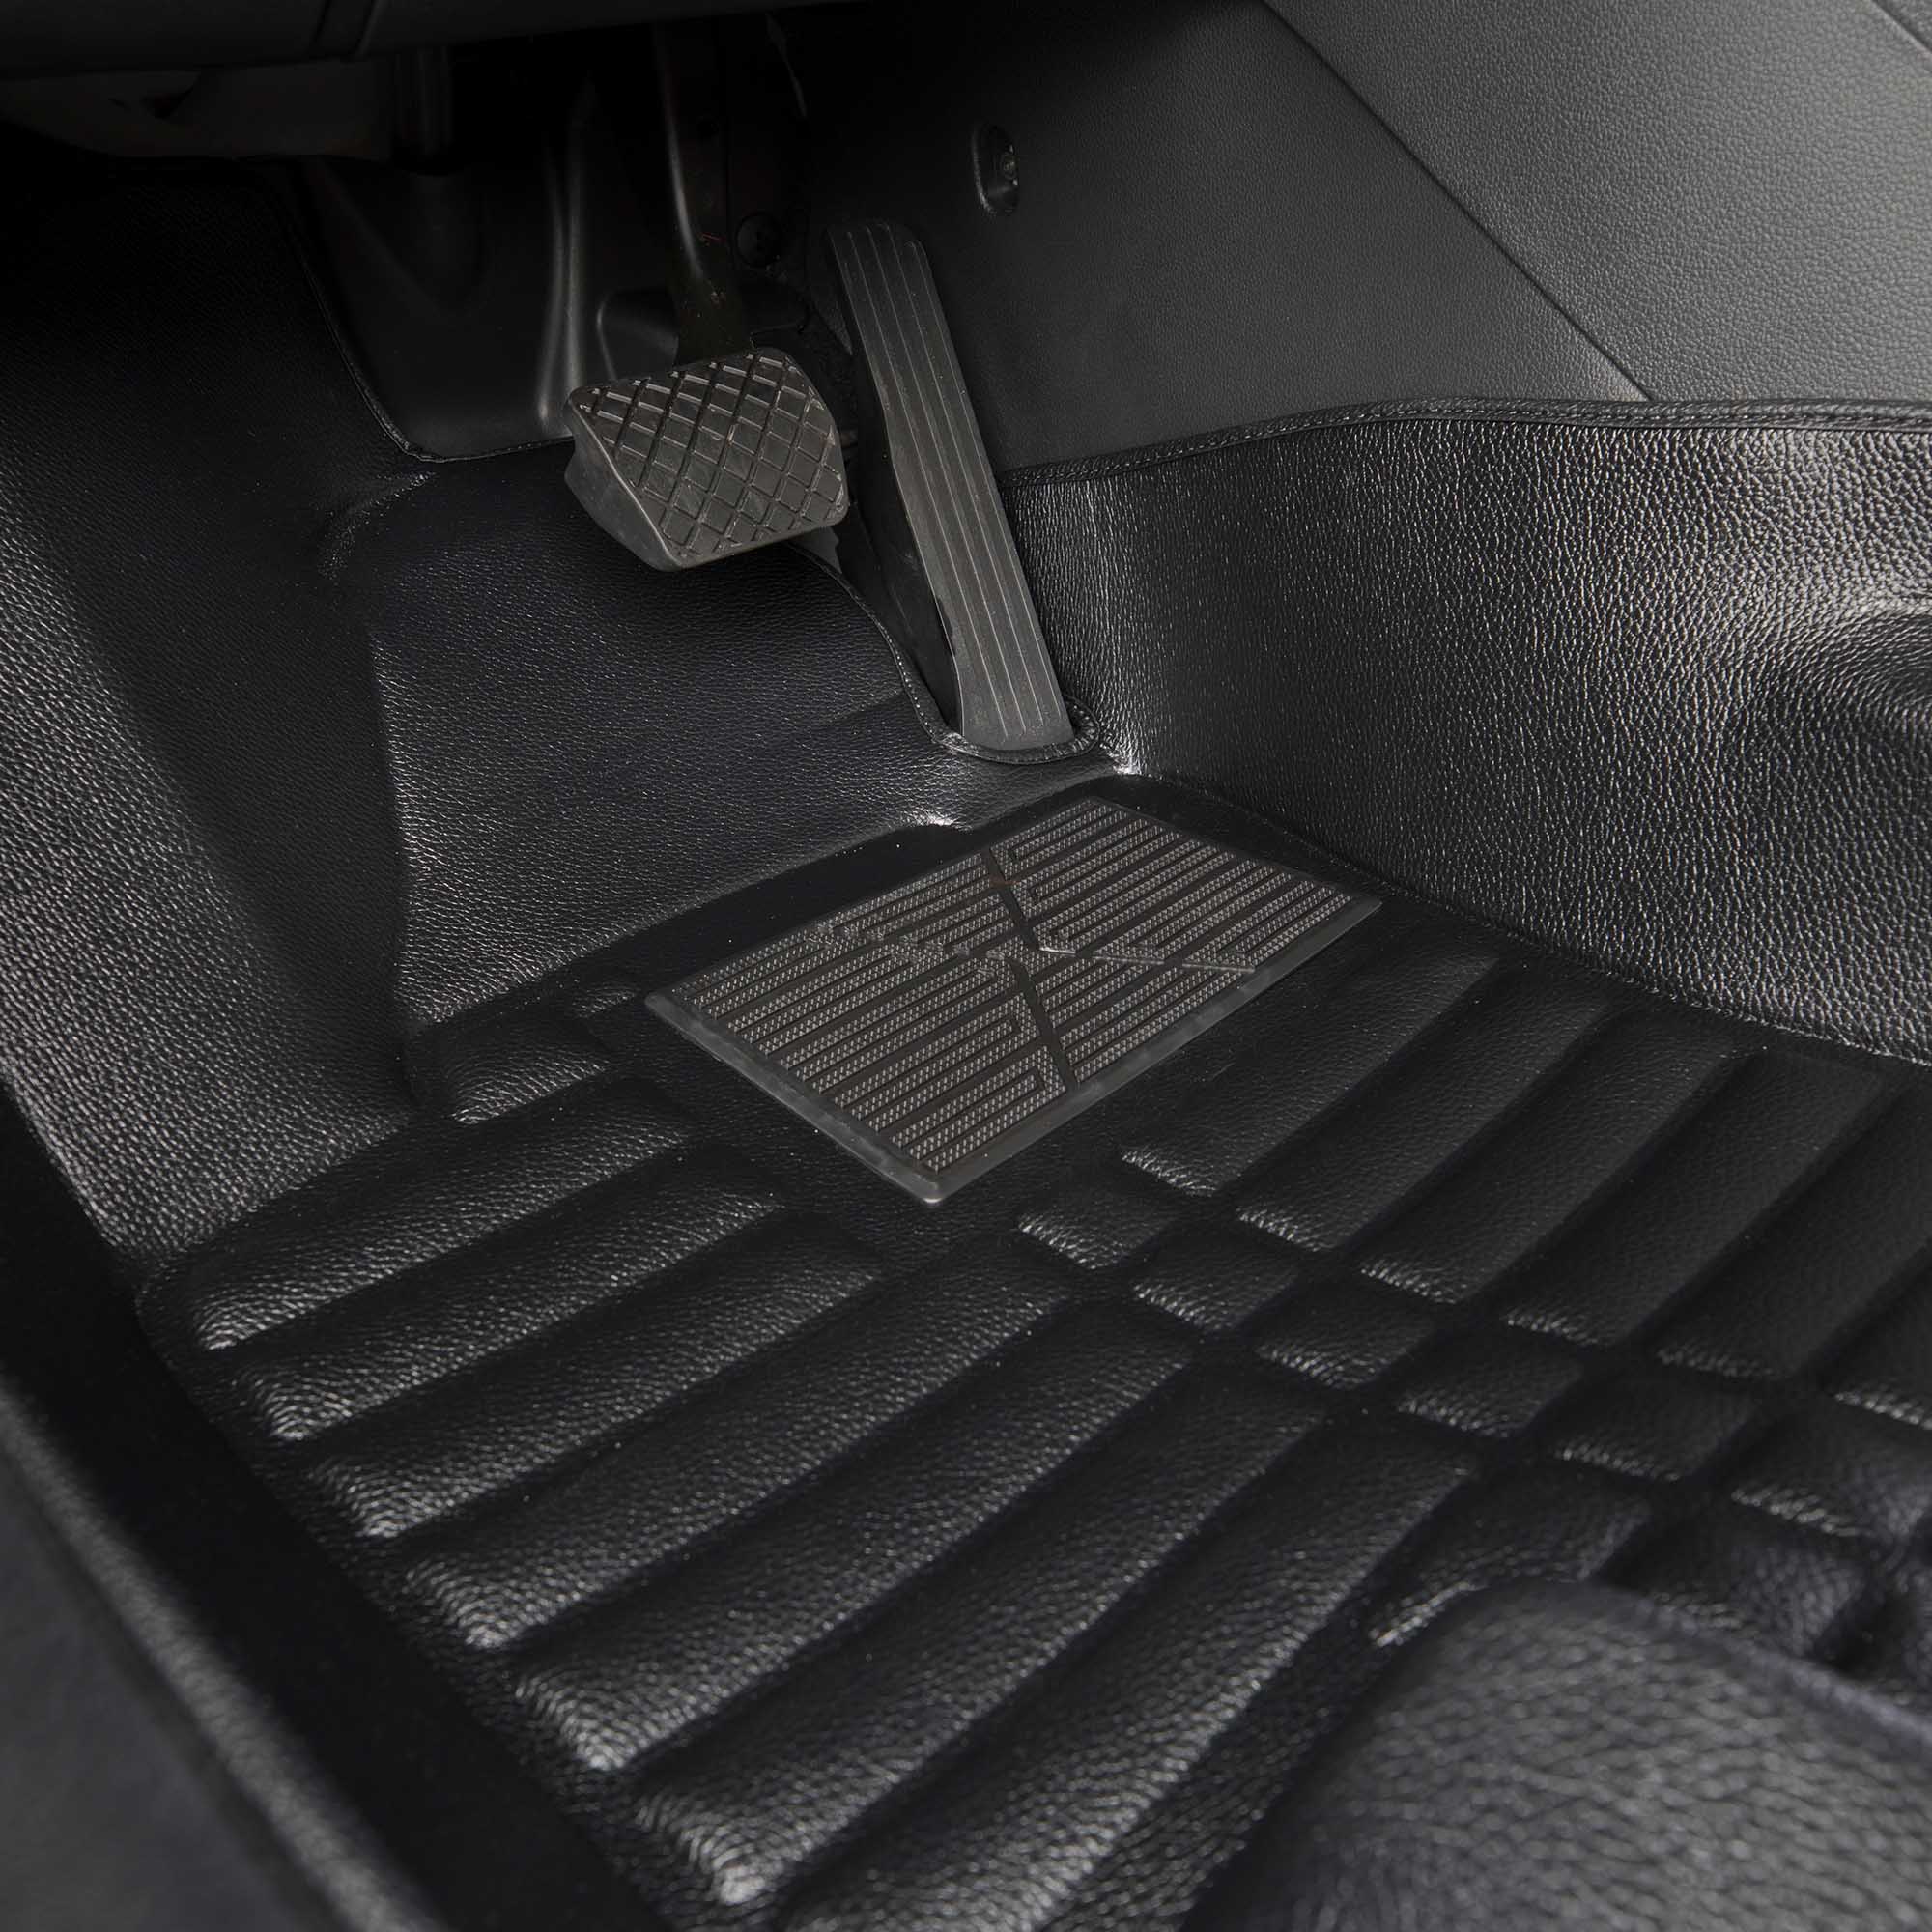 Gummi-Fußmatten schwarz für VW TOURAN Bj 05.10-05.15